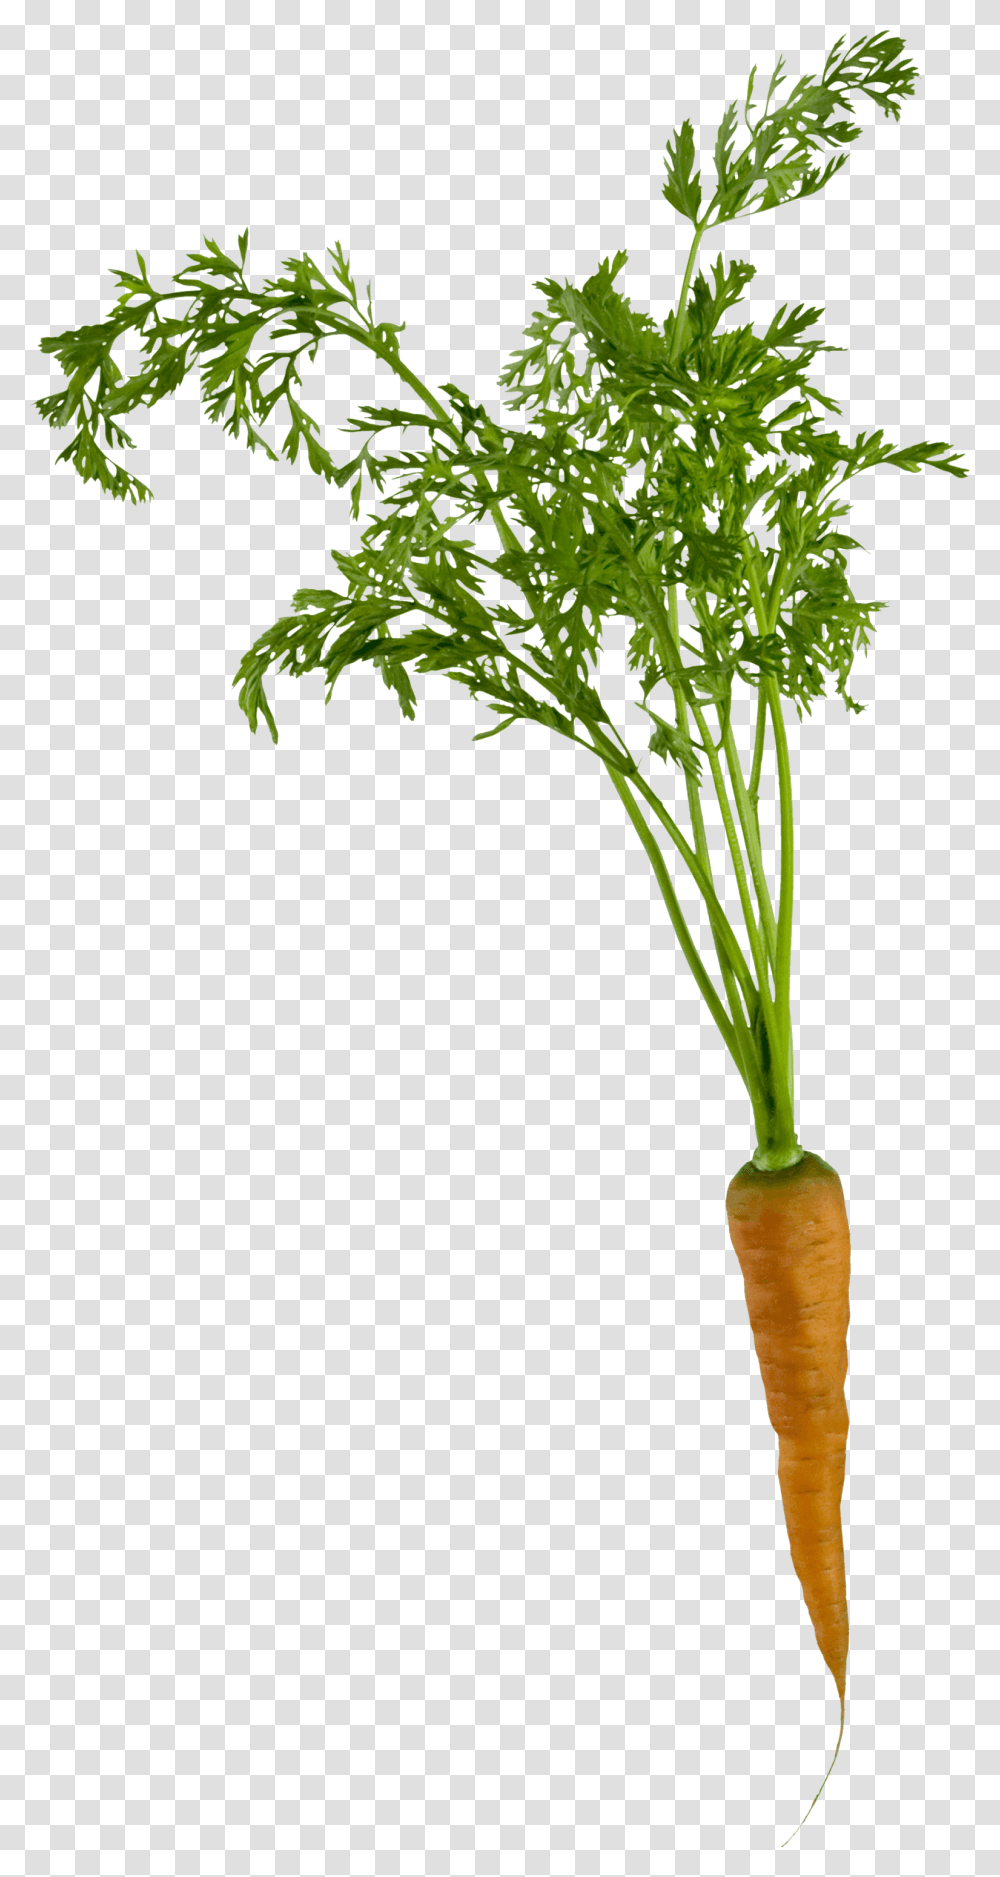 Carrot Plant, Vegetation, Tree, Food, Vegetable Transparent Png